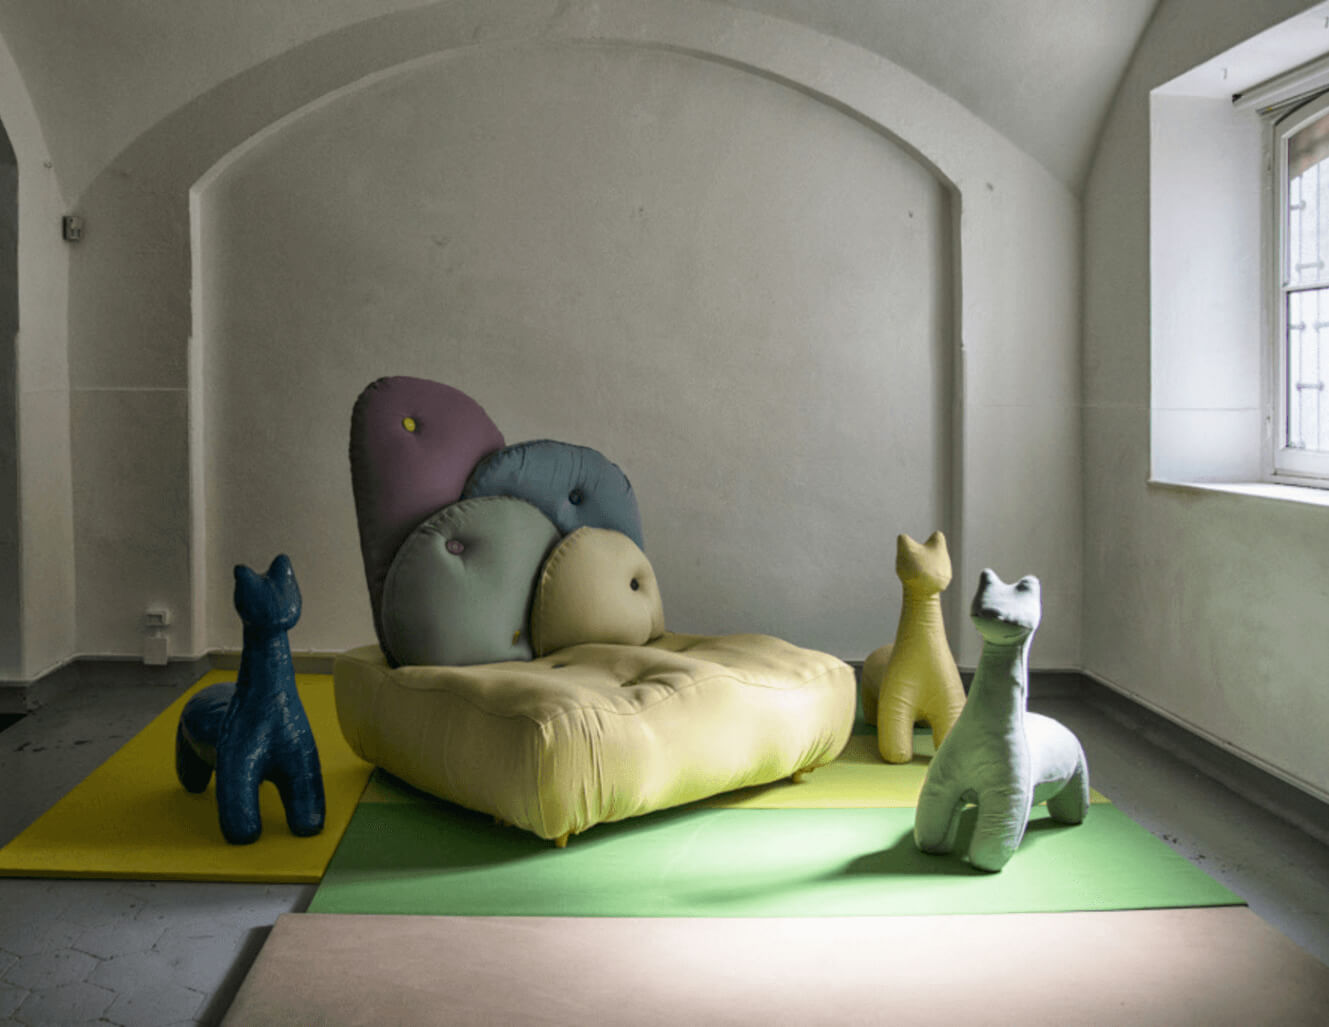 Pouf con forme animali e un divano realizzati con tessuti Sunbrella nella galleria di Rossana Orlandi a Milano, in Italia